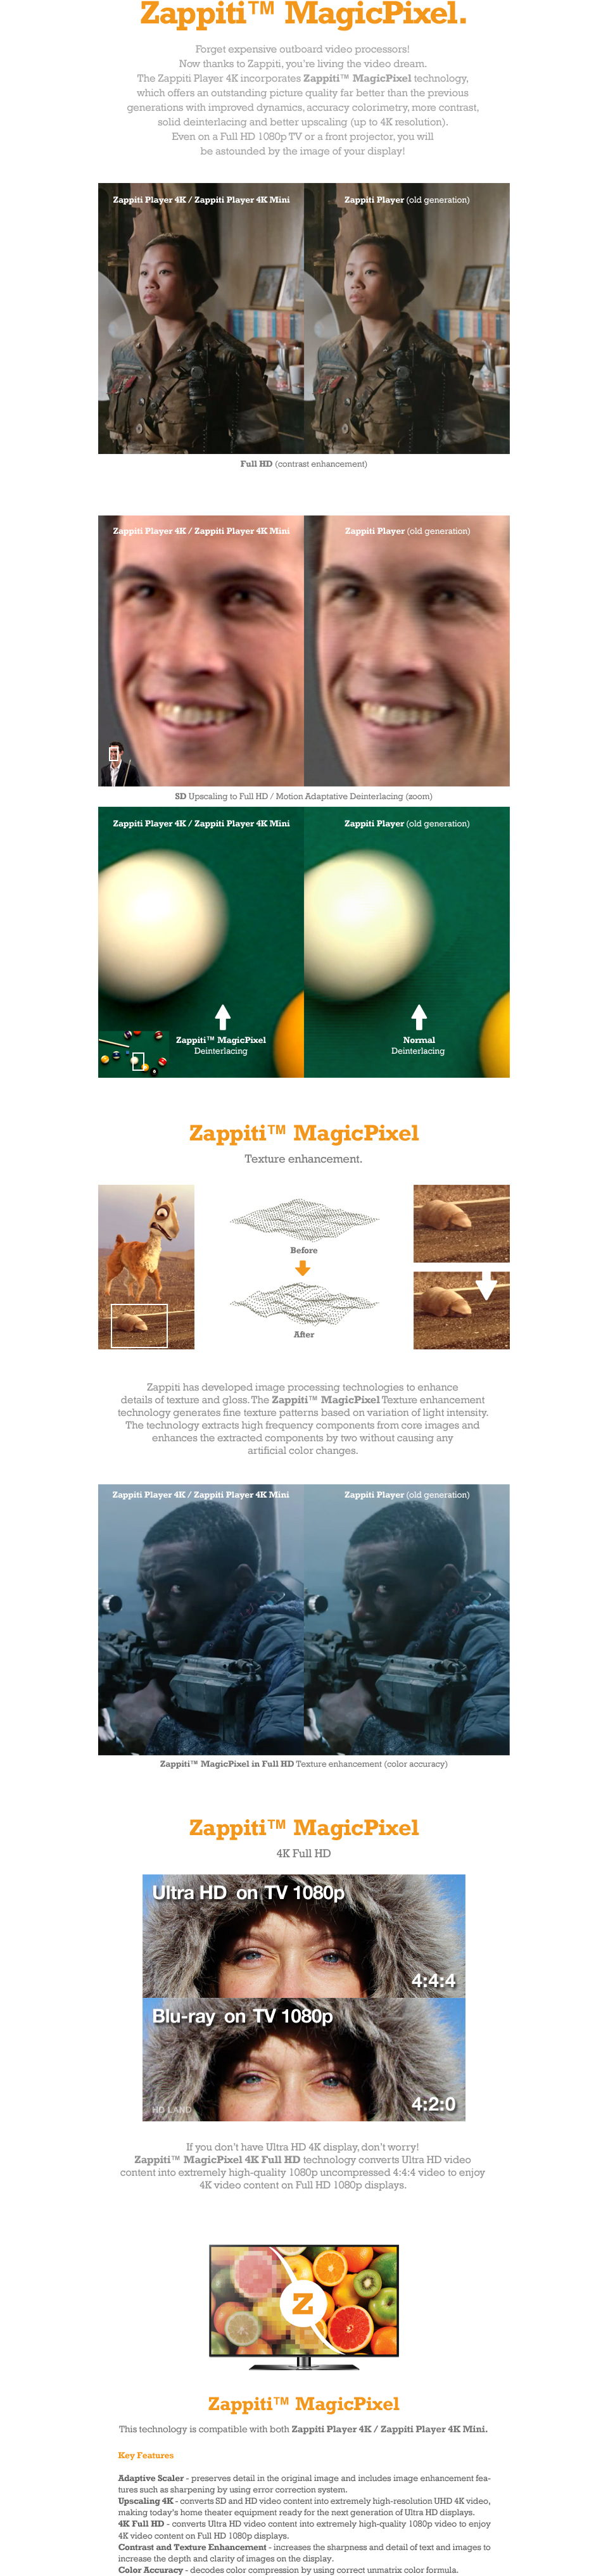 Zappiti MagicPixel